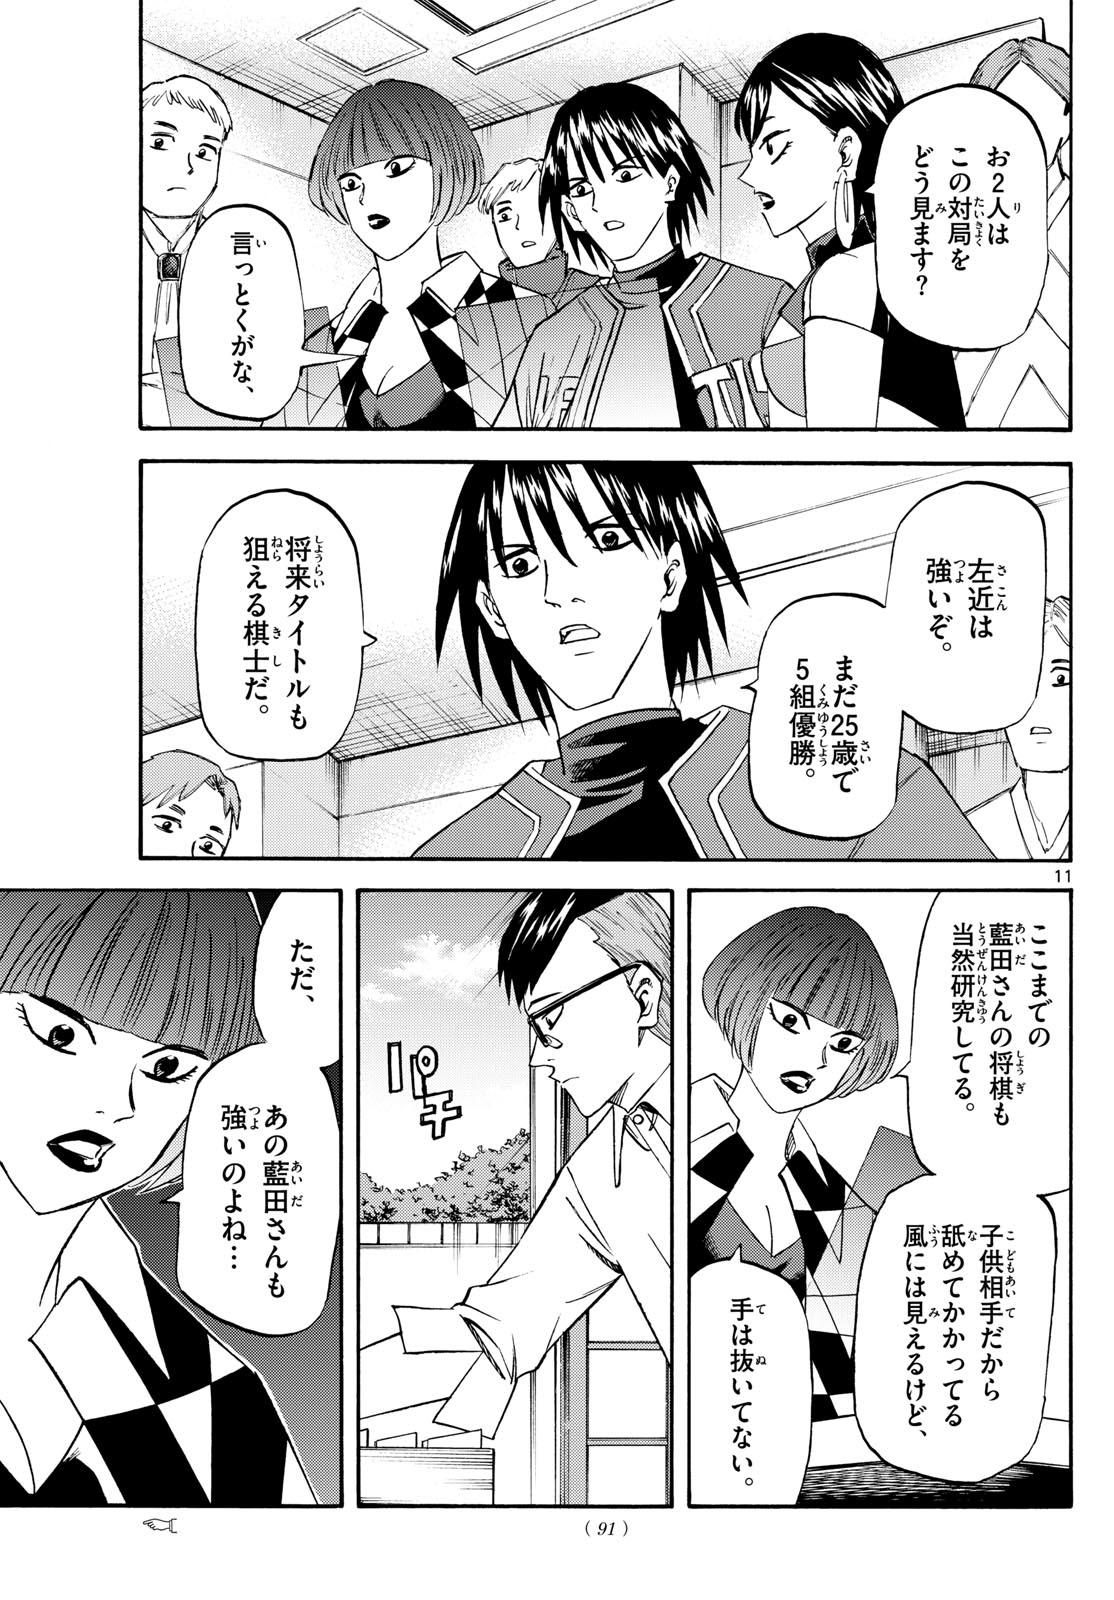 Tatsu to Ichigo - Chapter 196 - Page 11